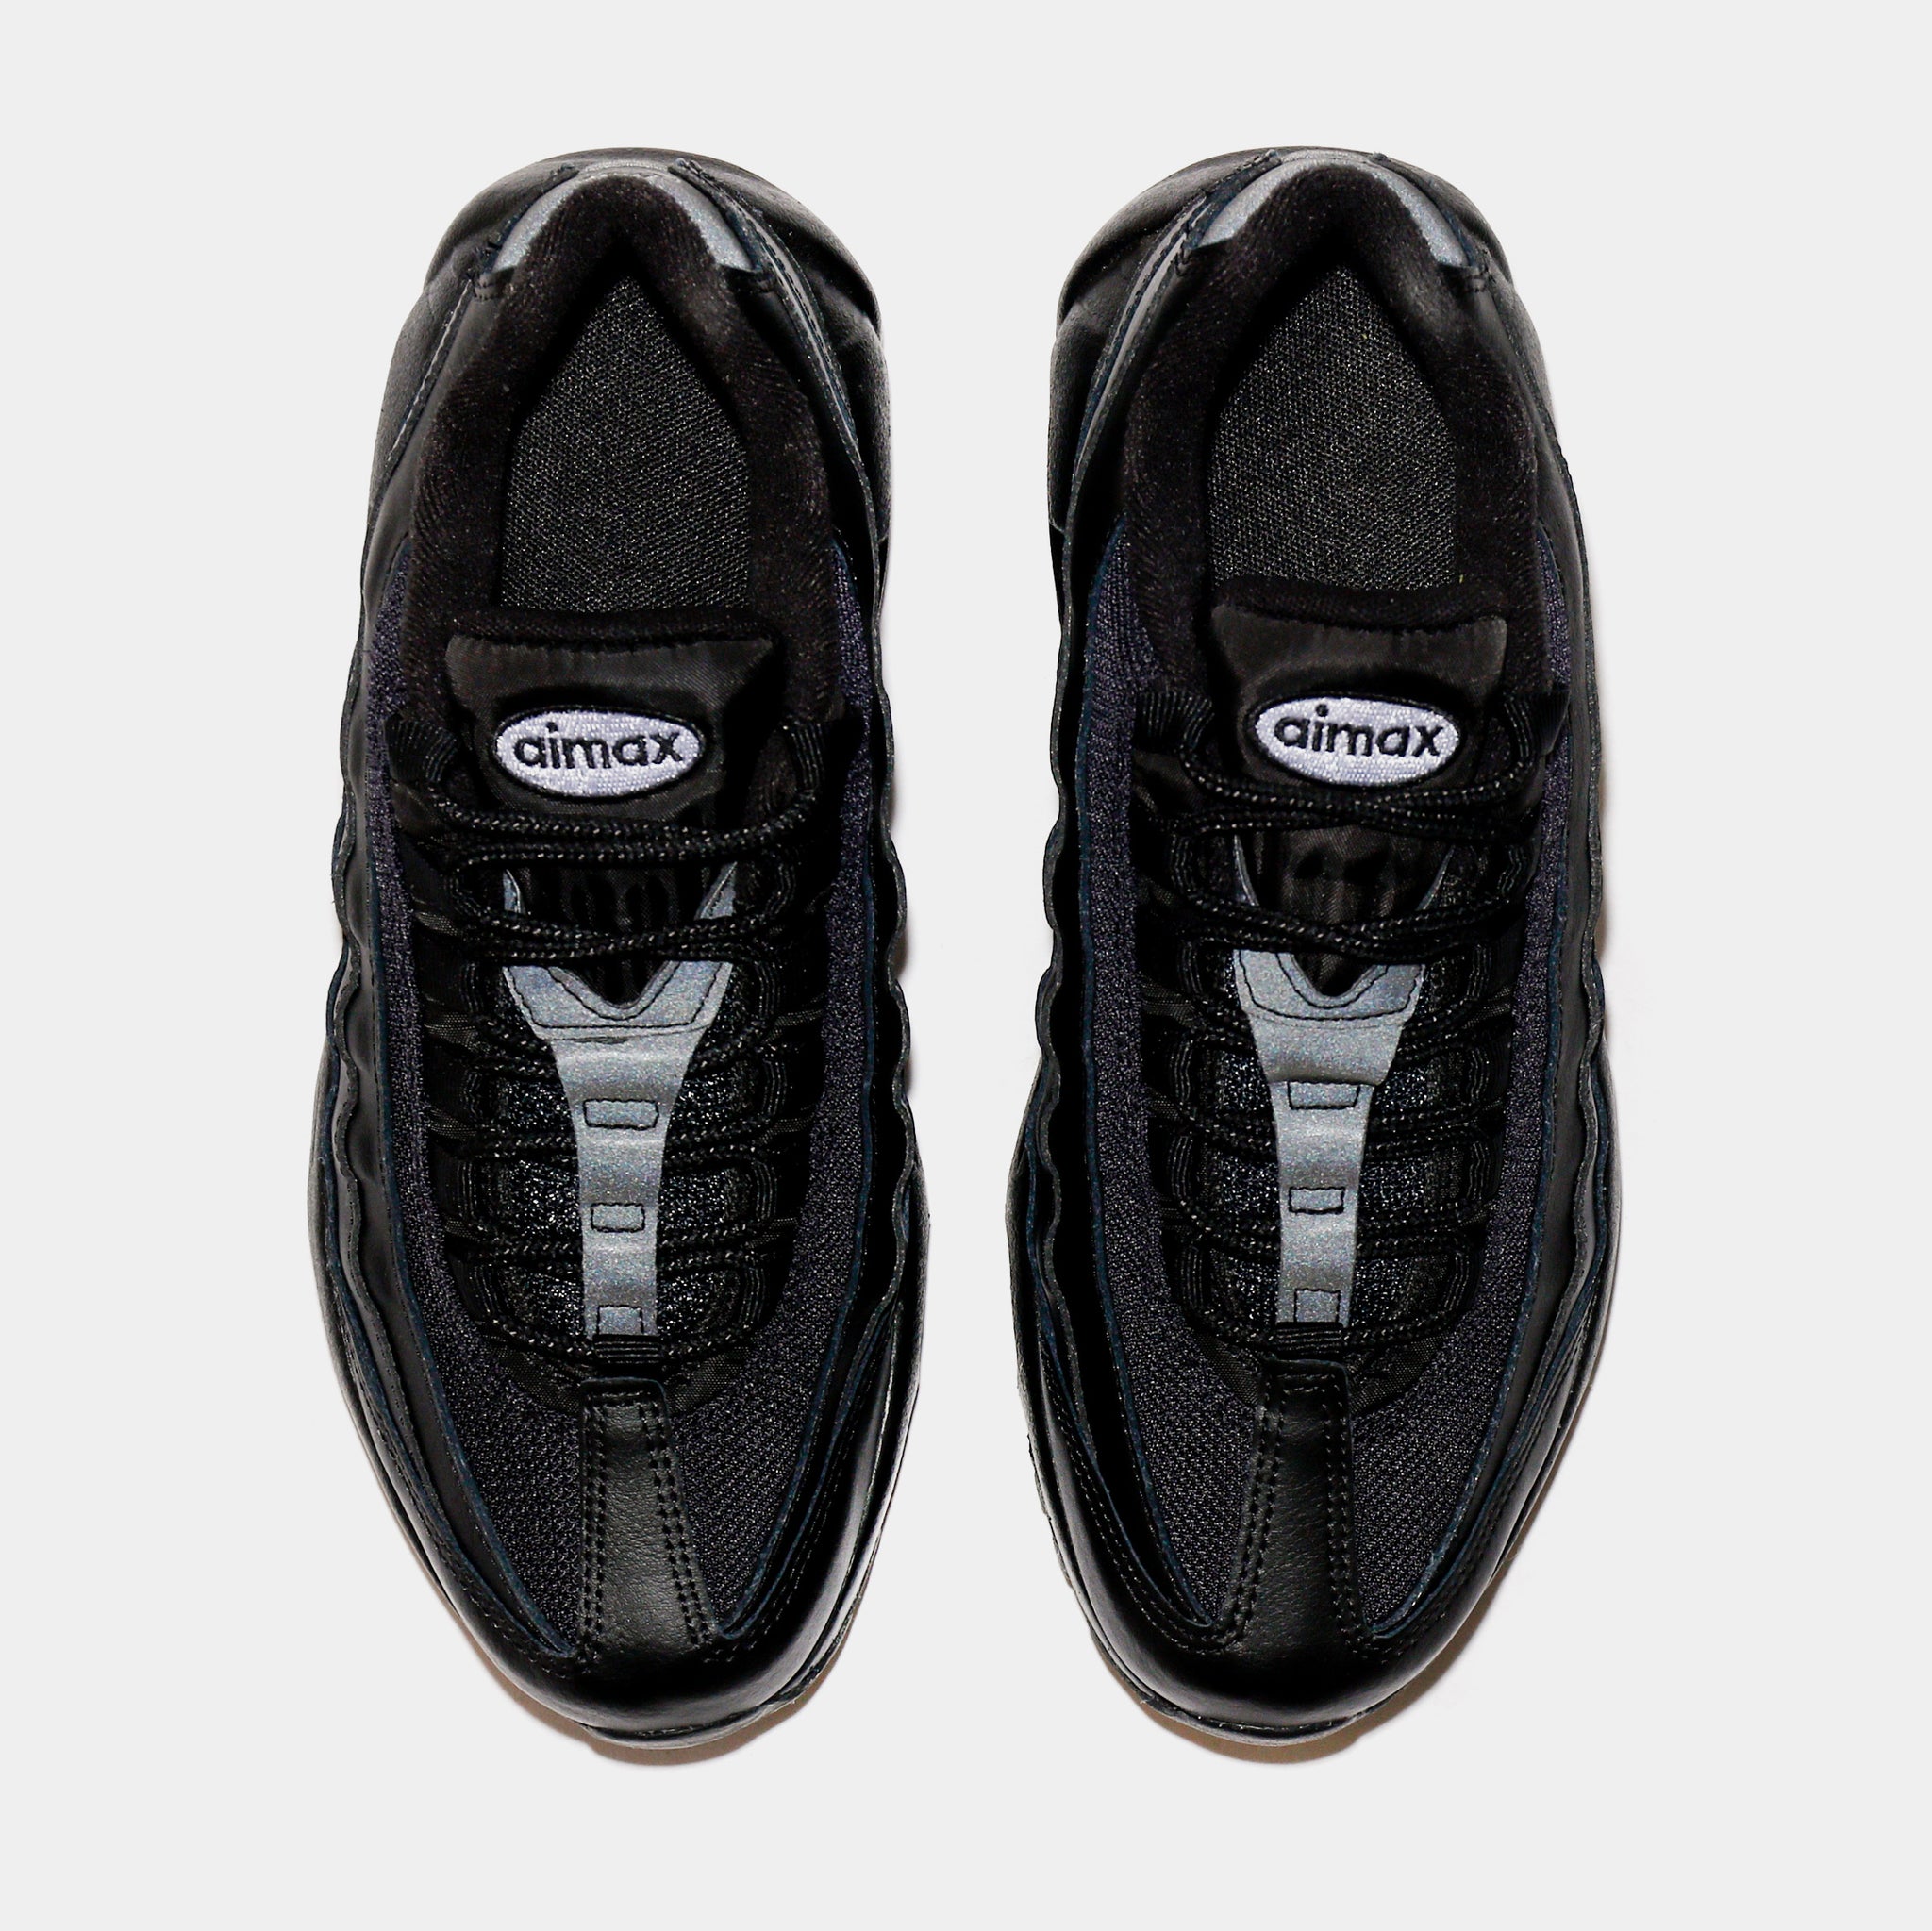 Nike Air Max 95 Grade School Lifestyle Shoes Black CJ3906-001